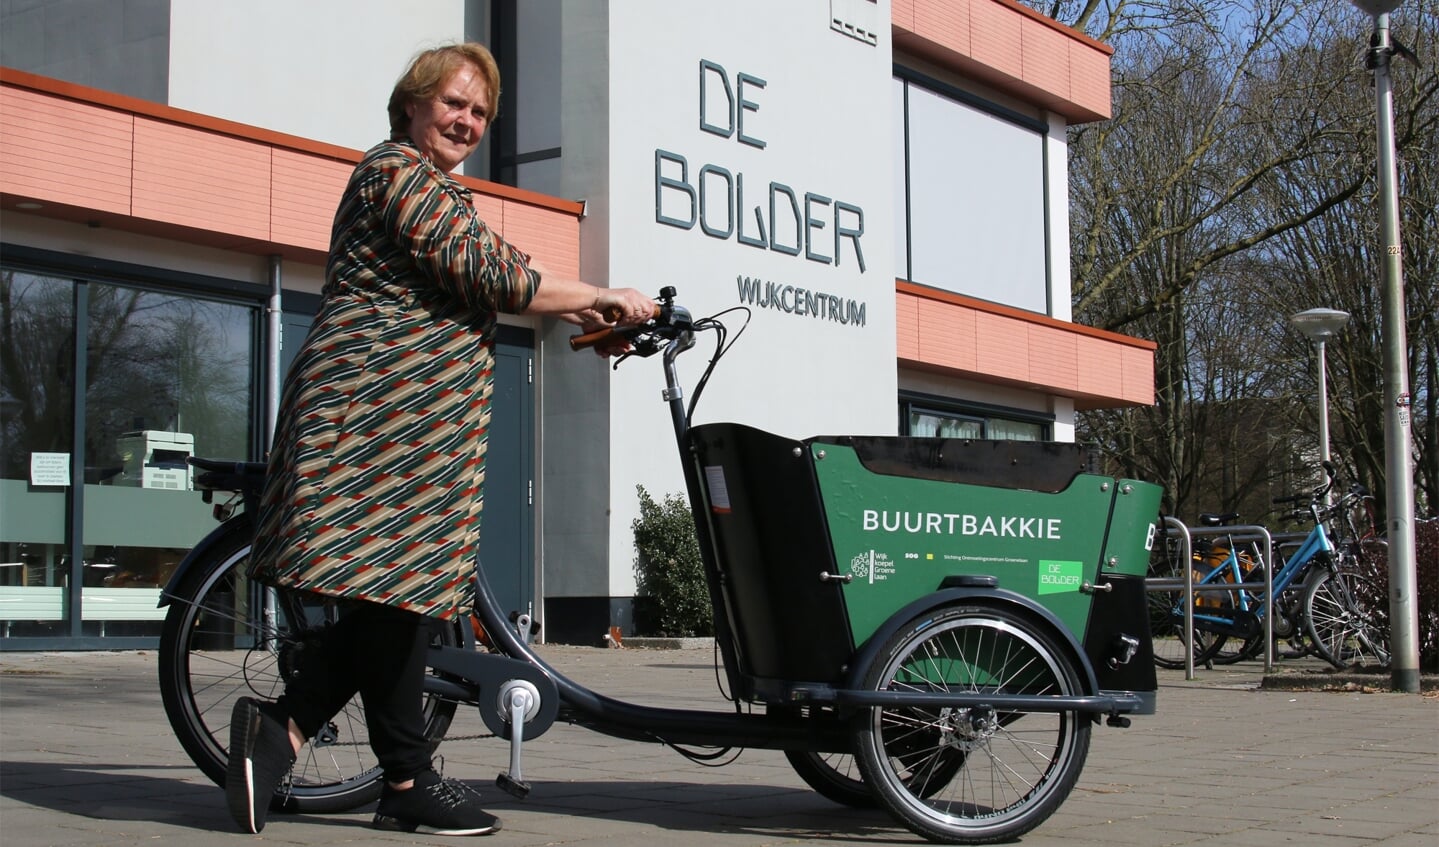 Wijkcoach Wilma Stokkel met het Buurtbakkie bij De Bolder.